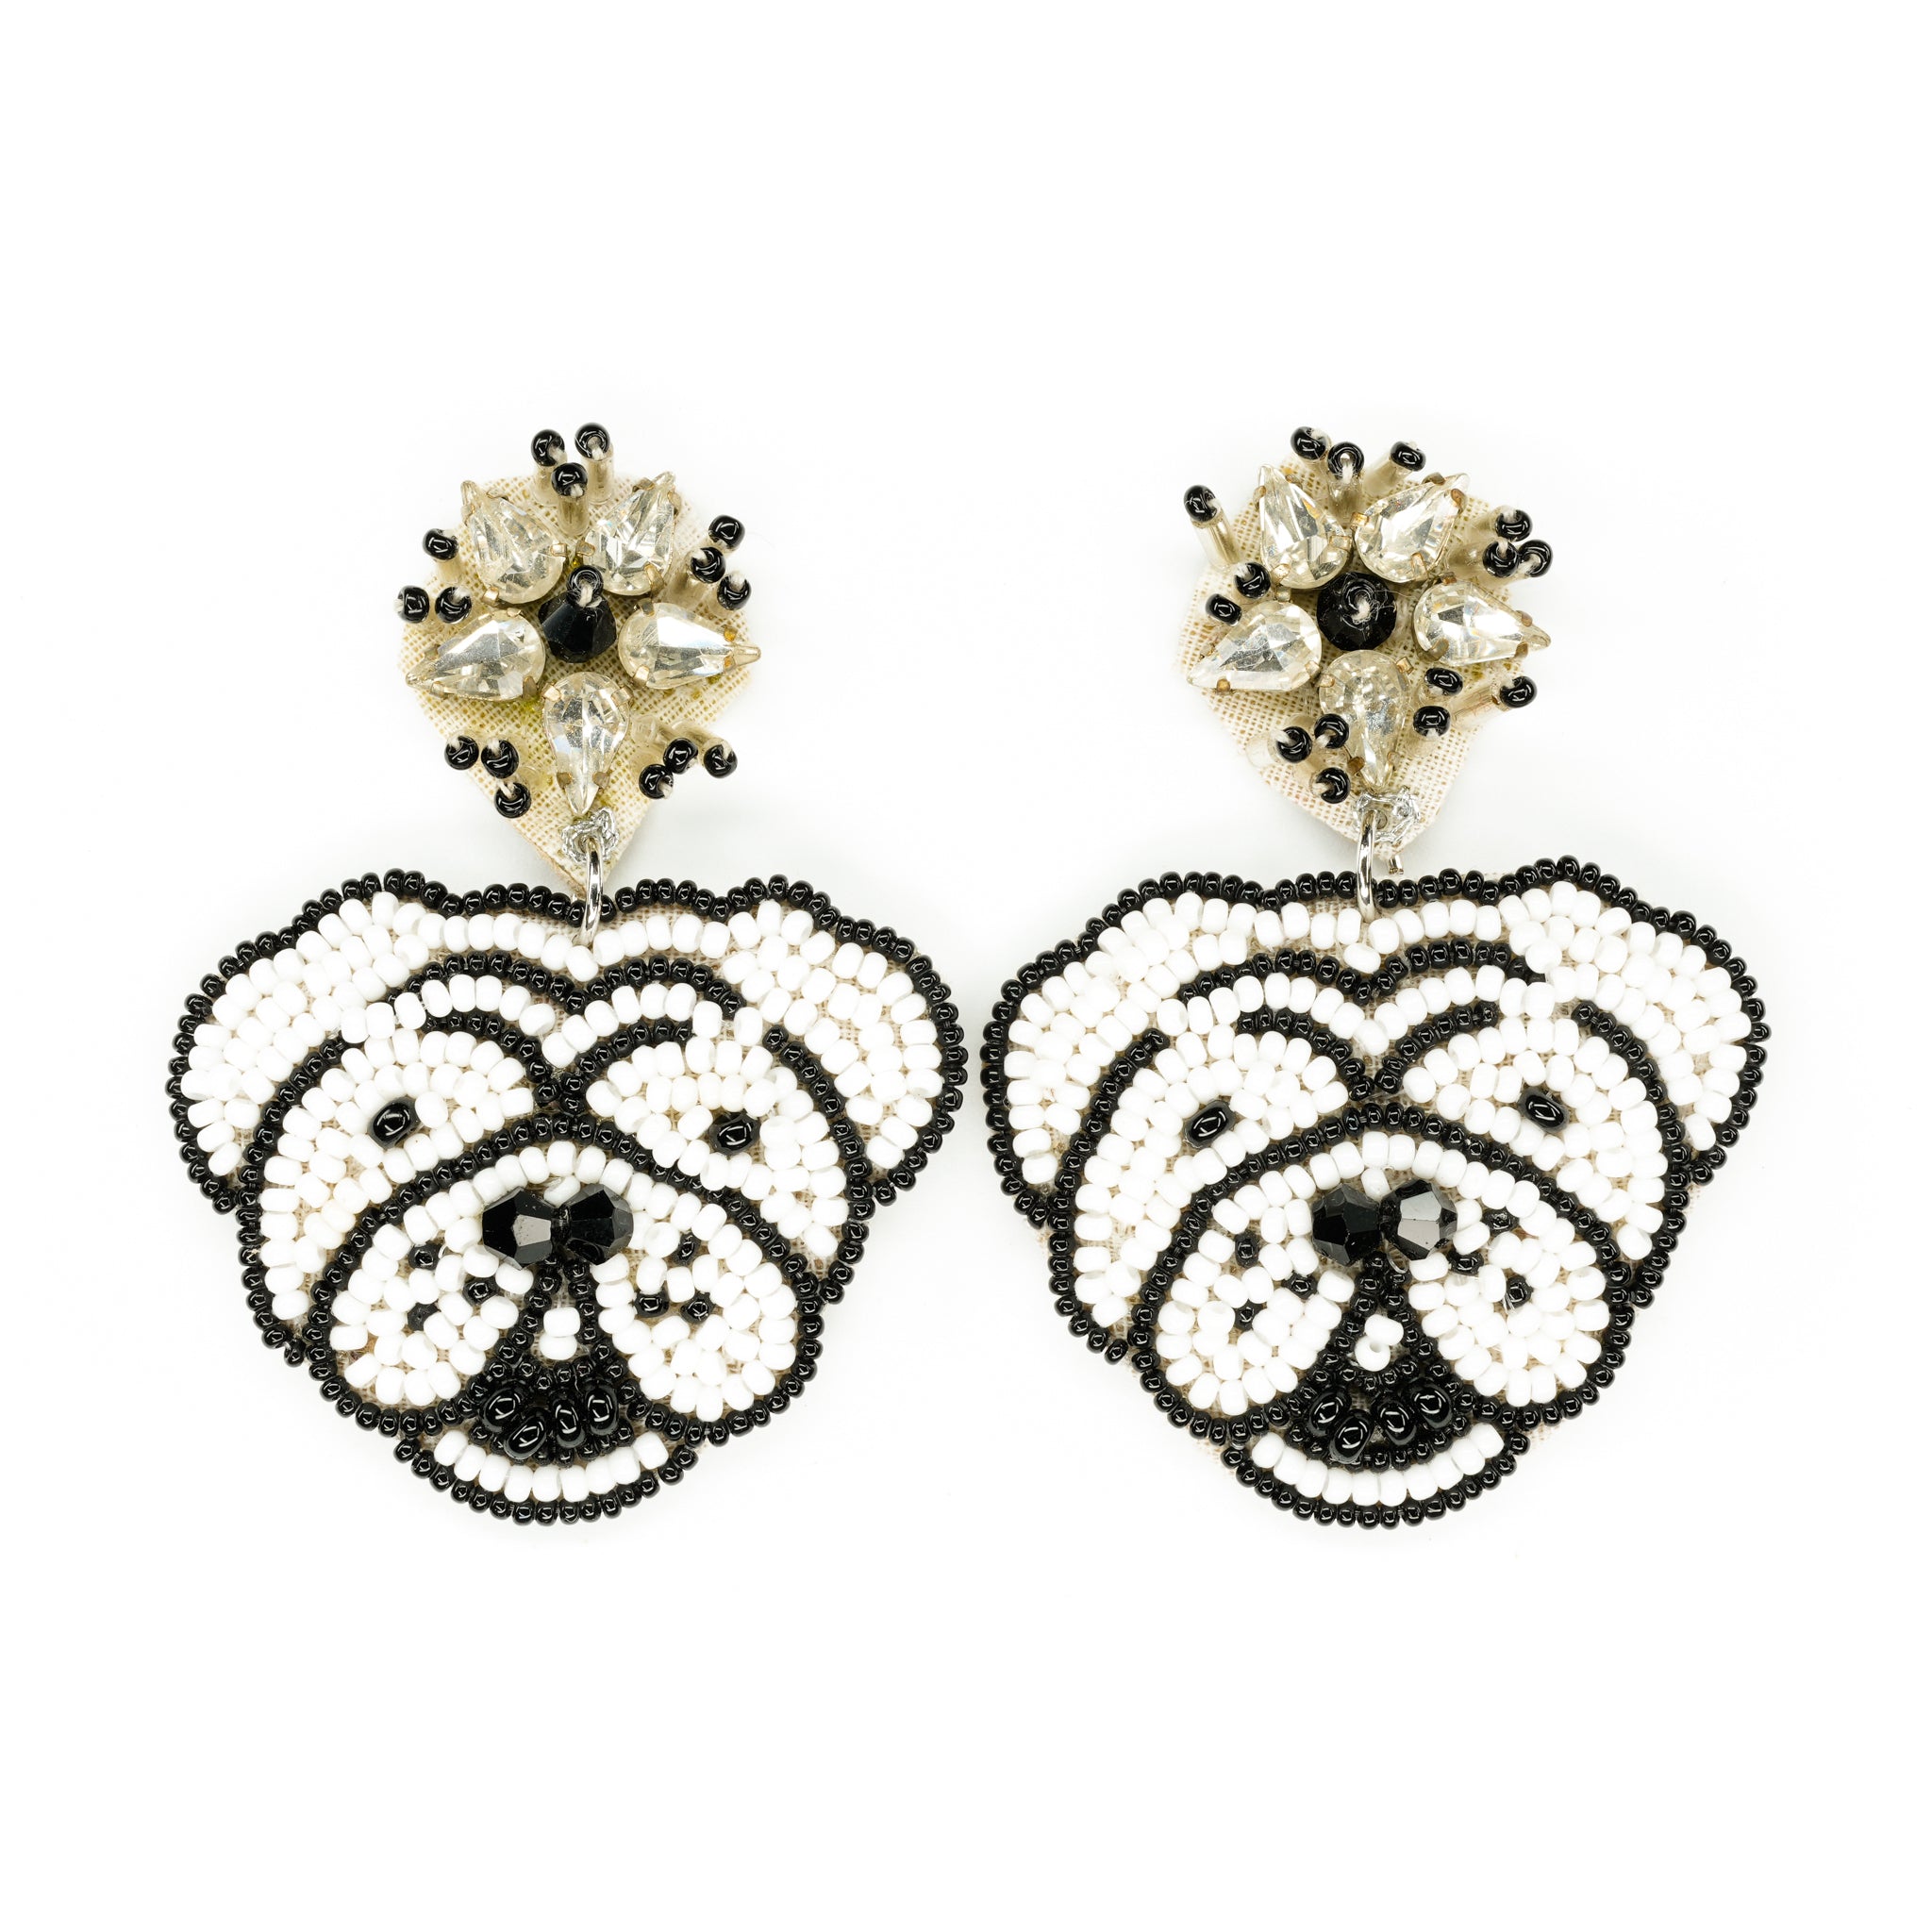 Bulldog Earrings